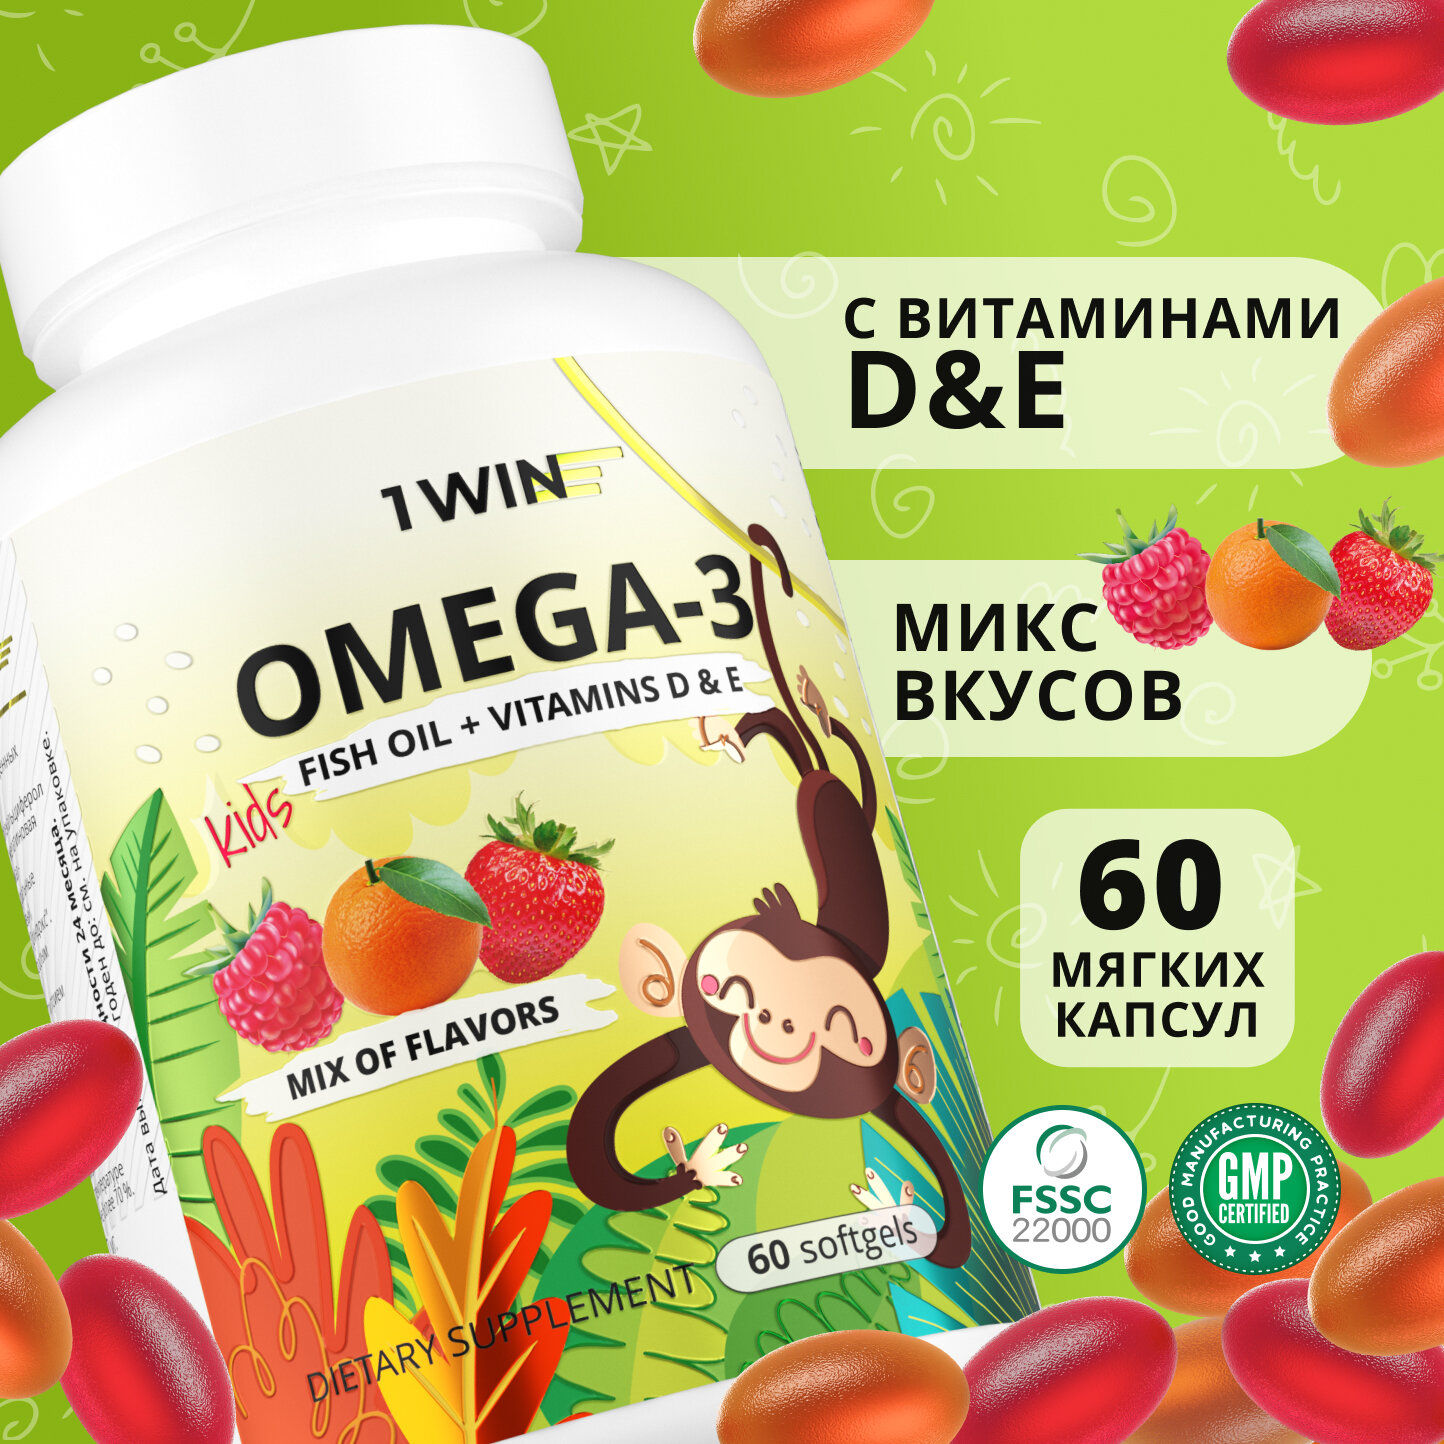 Детская Омега 3 жевательная 1WIN Omega-3 исландский рыбий жир, с Витаминами Д 3 (D) и Е, микс вкусов: Малина, Клубника, Апельсин, 60 капсул